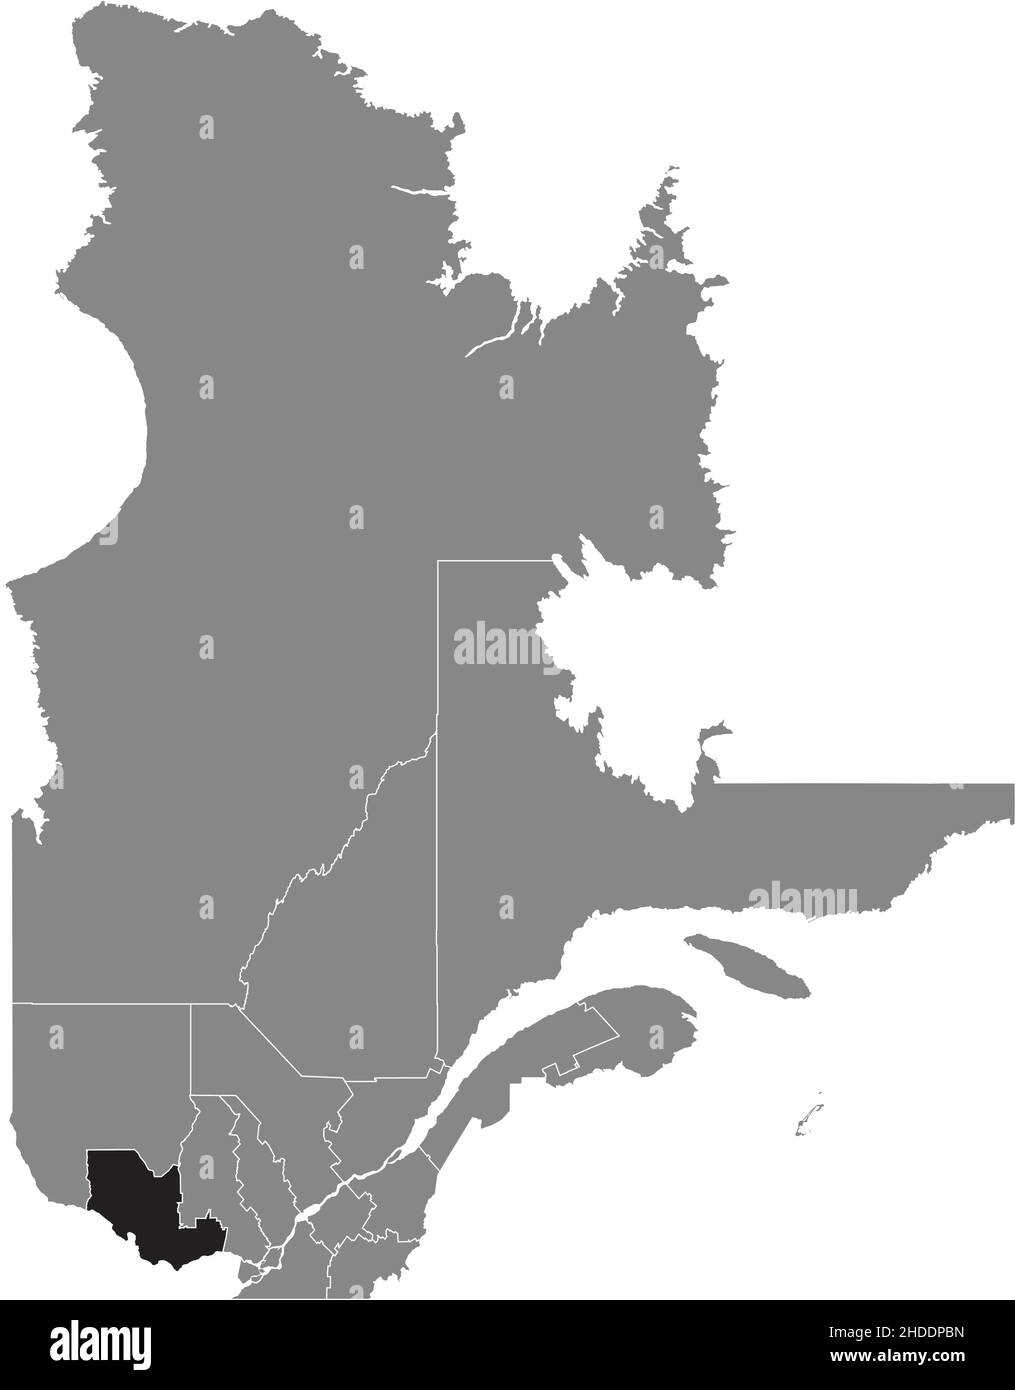 Nero piatto vuoto evidenziato mappa della posizione della regione OUTAOUAIS all'interno di grigio mappa amministrativa della provincia canadese del Québec, Canada Illustrazione Vettoriale